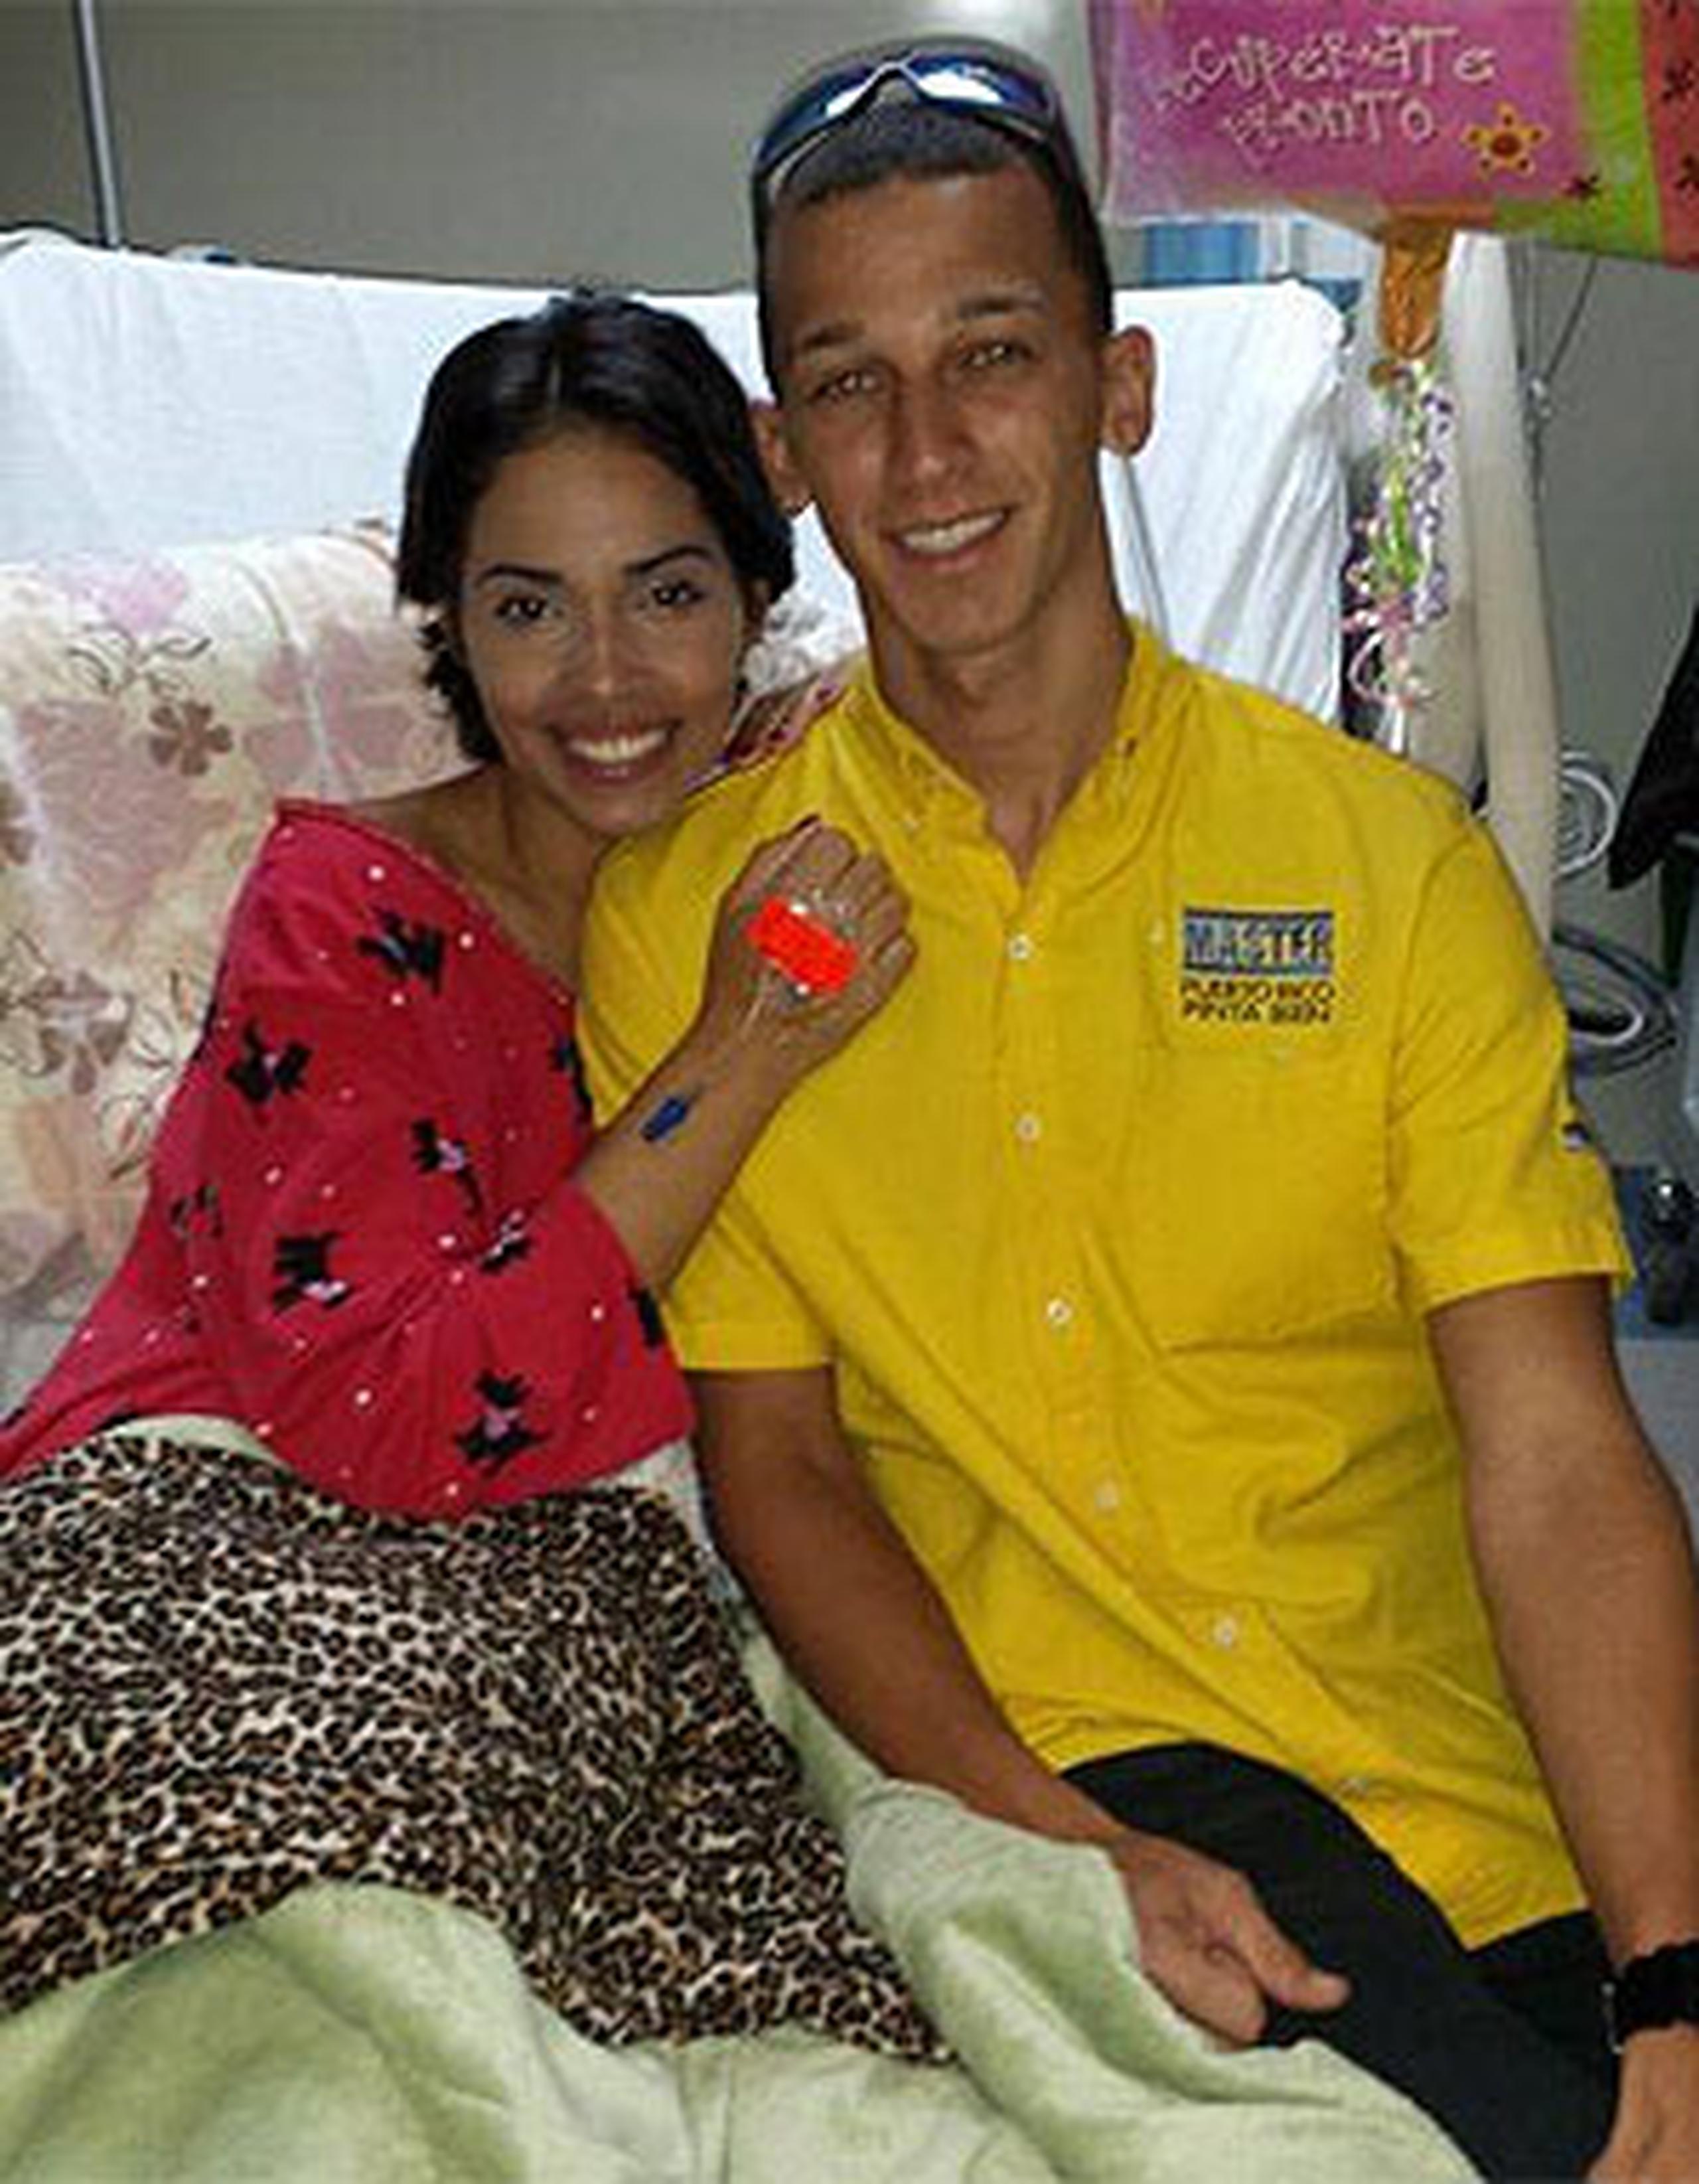 Aivelyn recibió la visita en el hospital de Nomar Santiago Bonilla, el surfer que la rescató y que gracias a él hoy está viva. (Facebook)